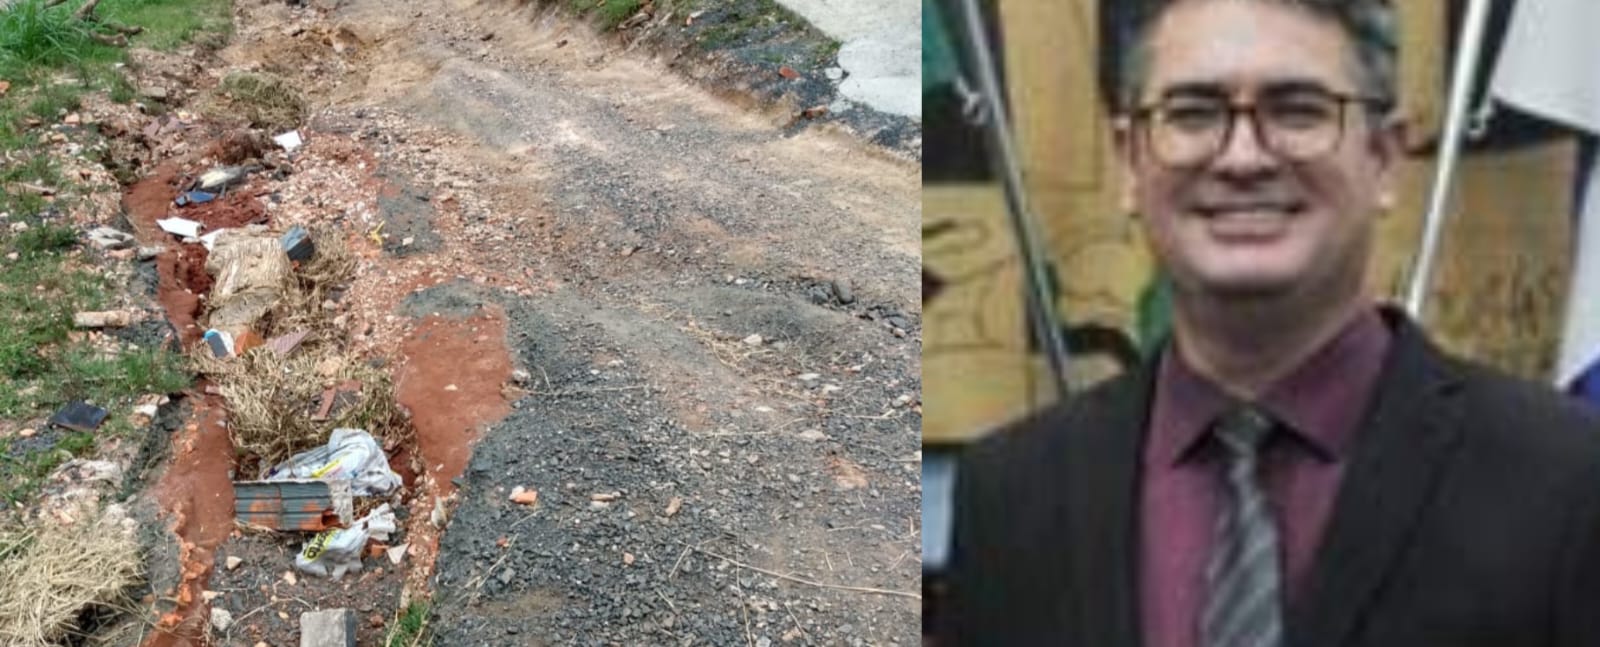 Vereador Julio Kuller promete asfalto em Olarias mas não cumpre promessa, diz morador